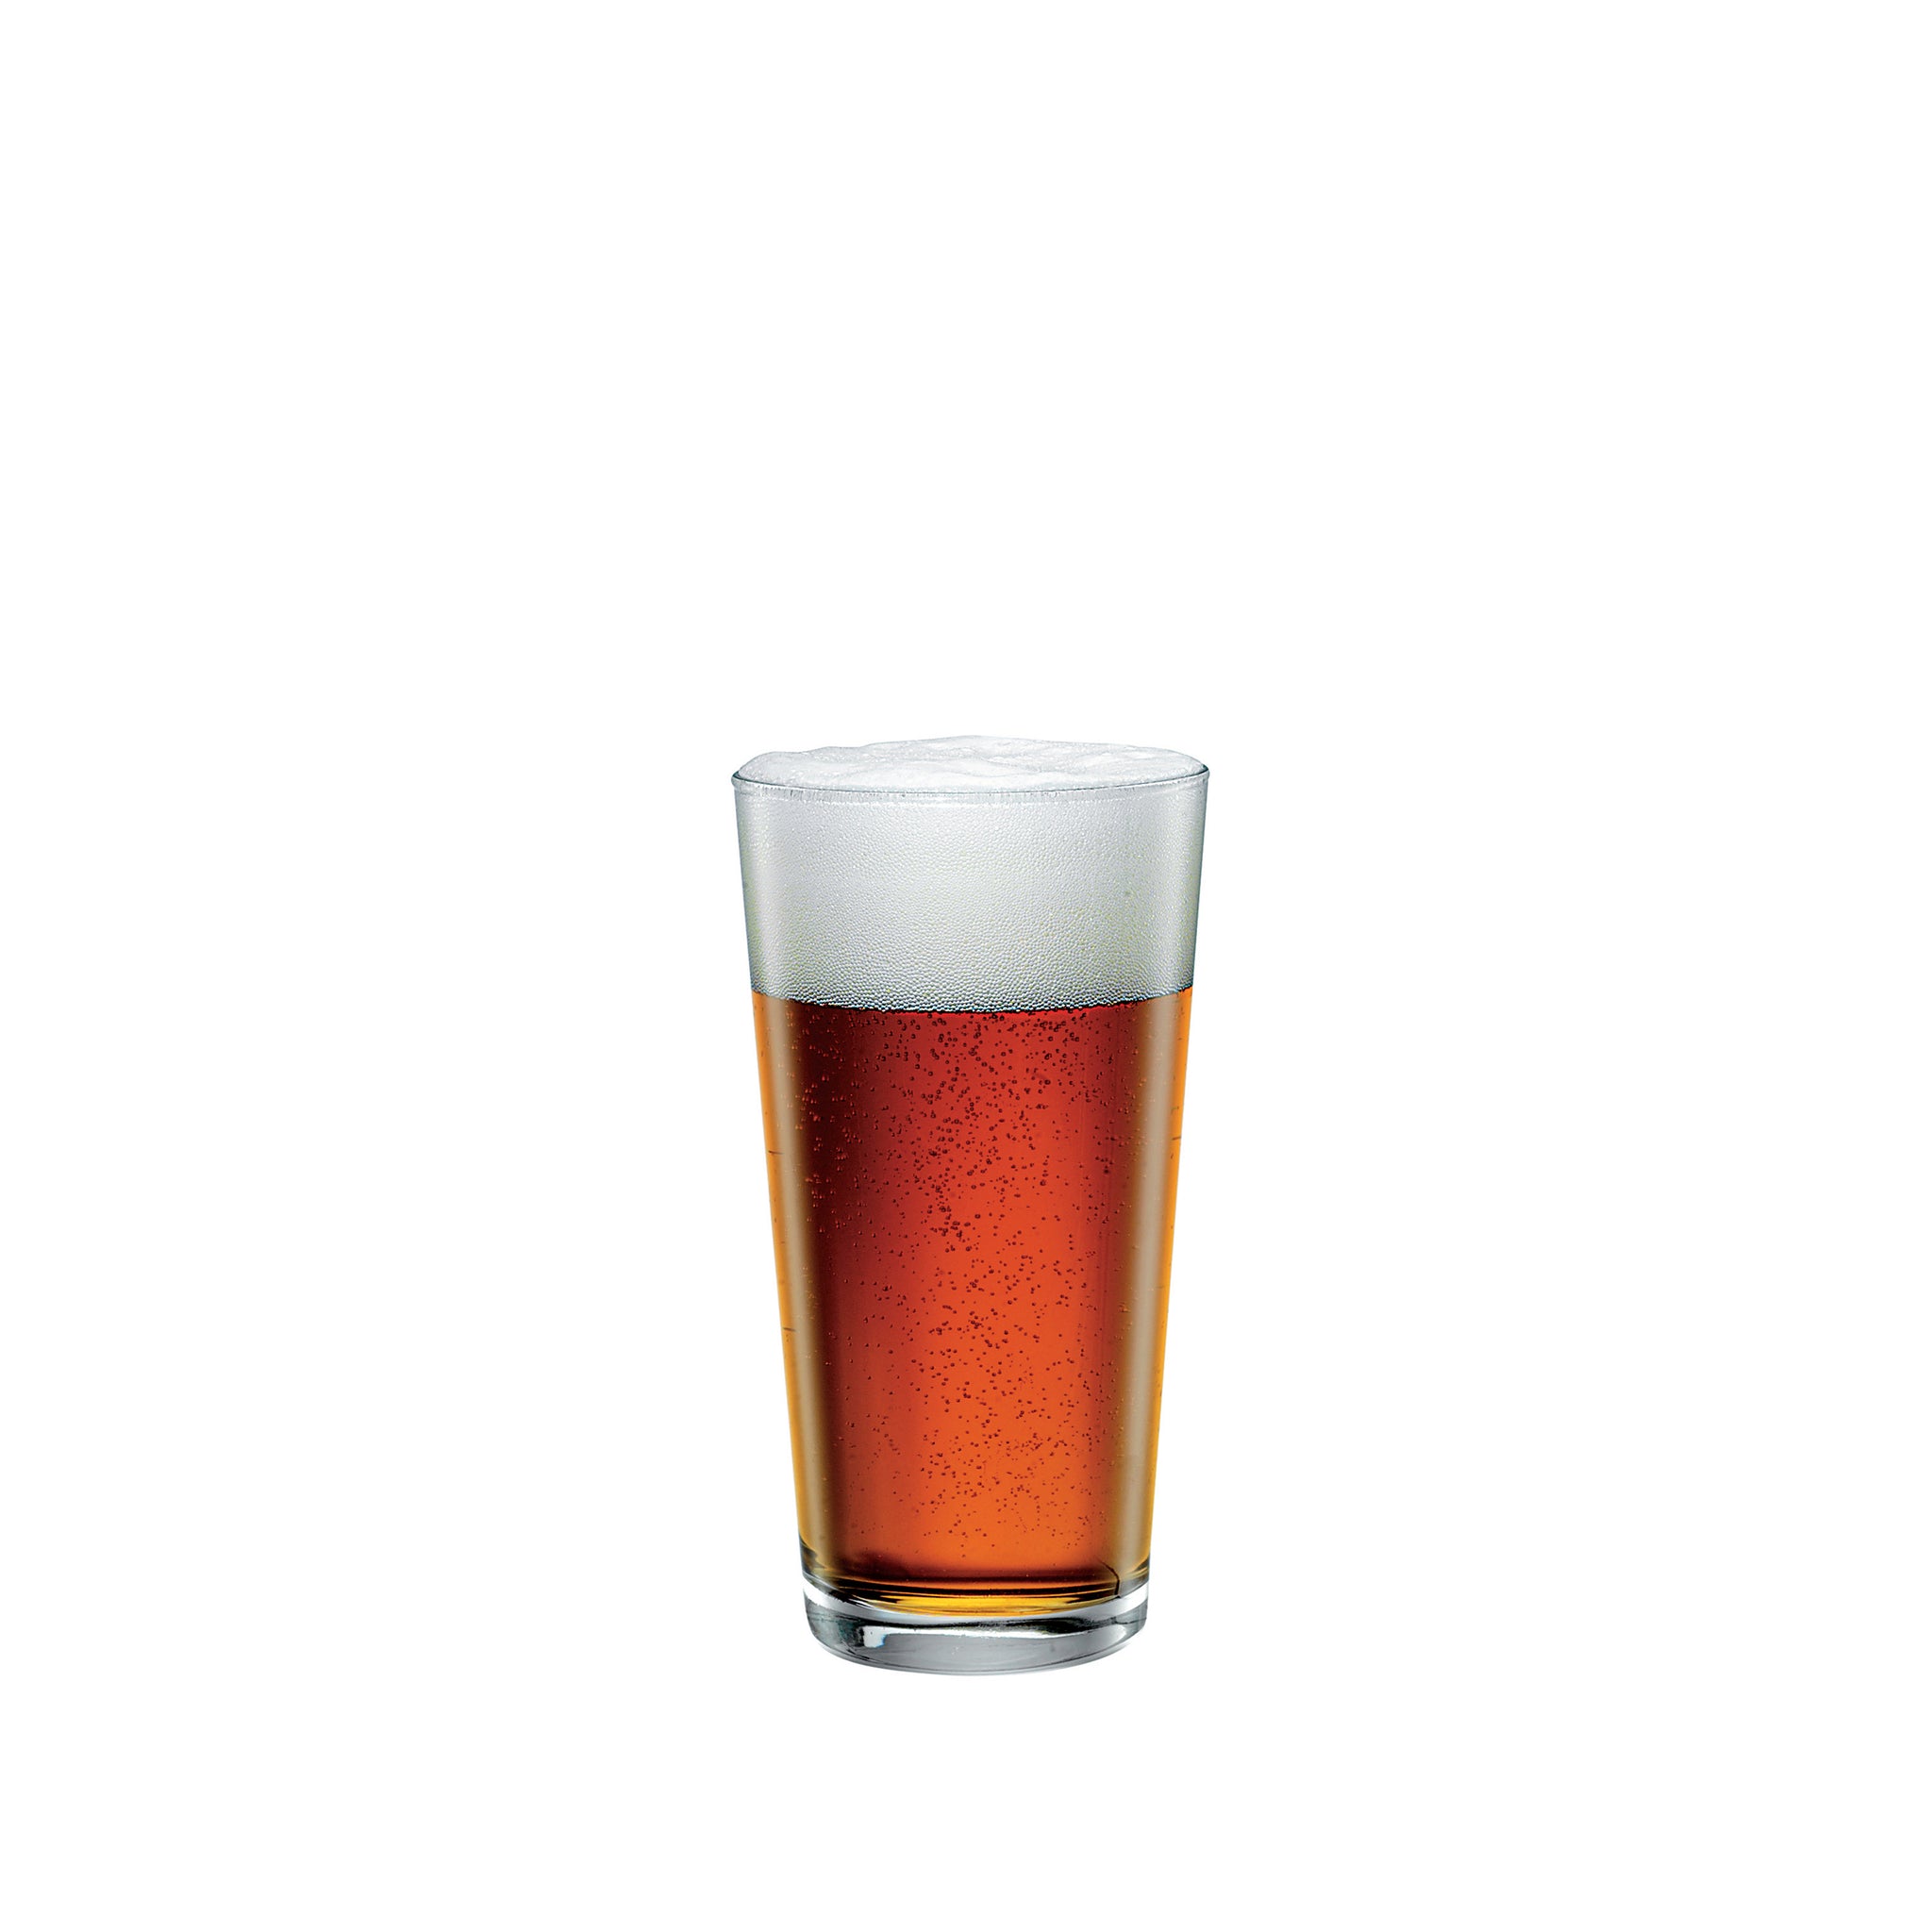 Nonix 19.75 oz. Stackable Pub Beer Glasses (Set of 12)